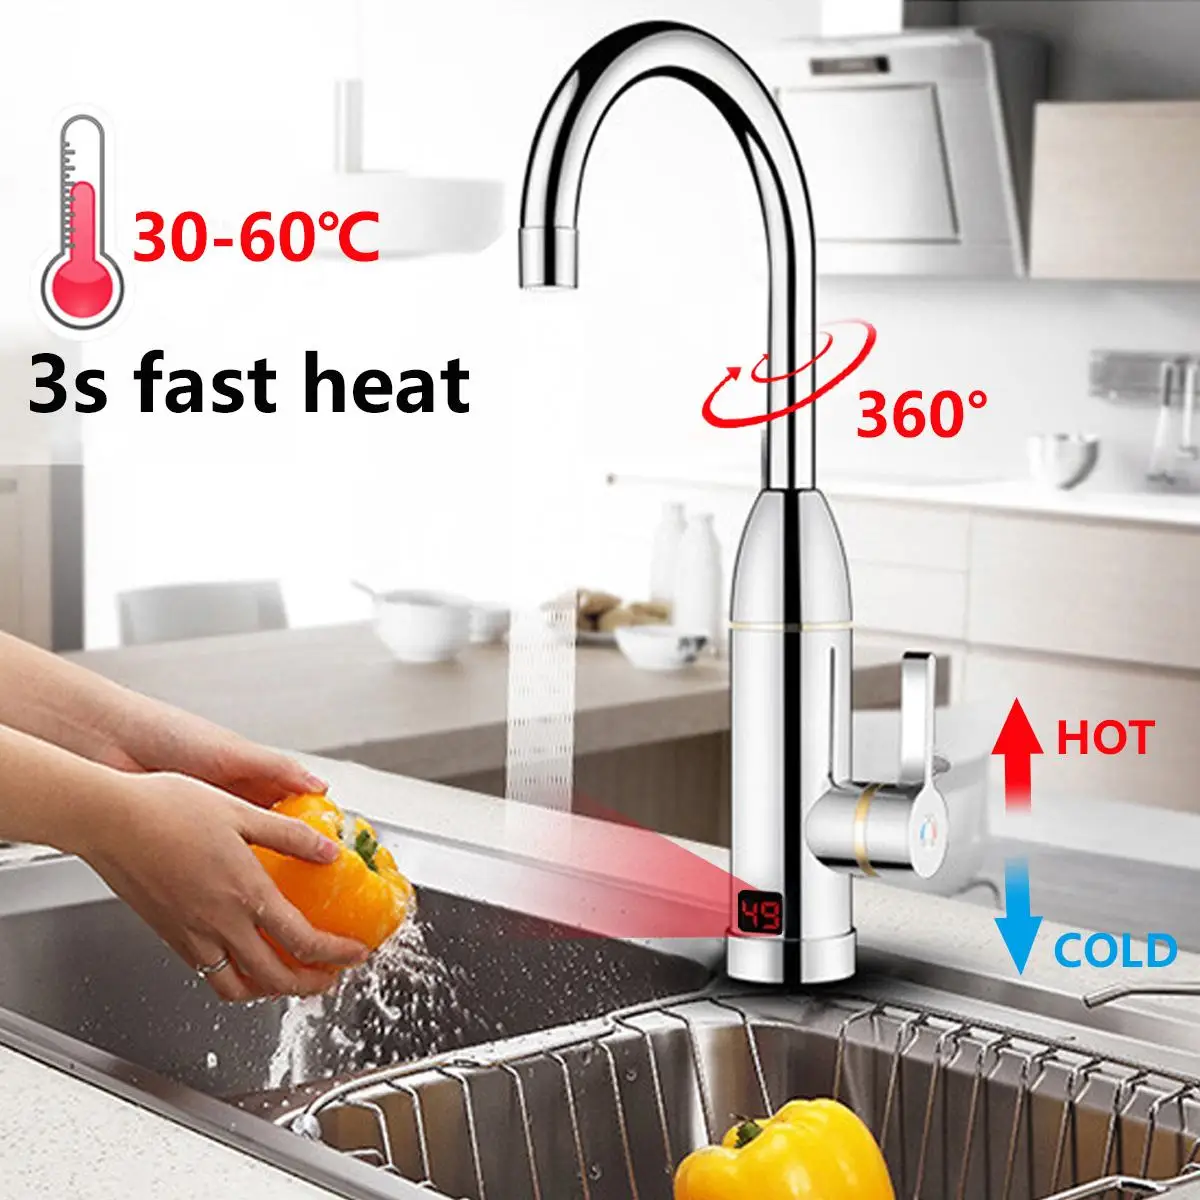 3000W 220V Mutfak Anında İsıtma Musluk Isıtıcı Sıcak Soğuk Çift Kullanımlı Haznesiz Su Hızlı Isıtma Musluk Duş LED Ekran ile